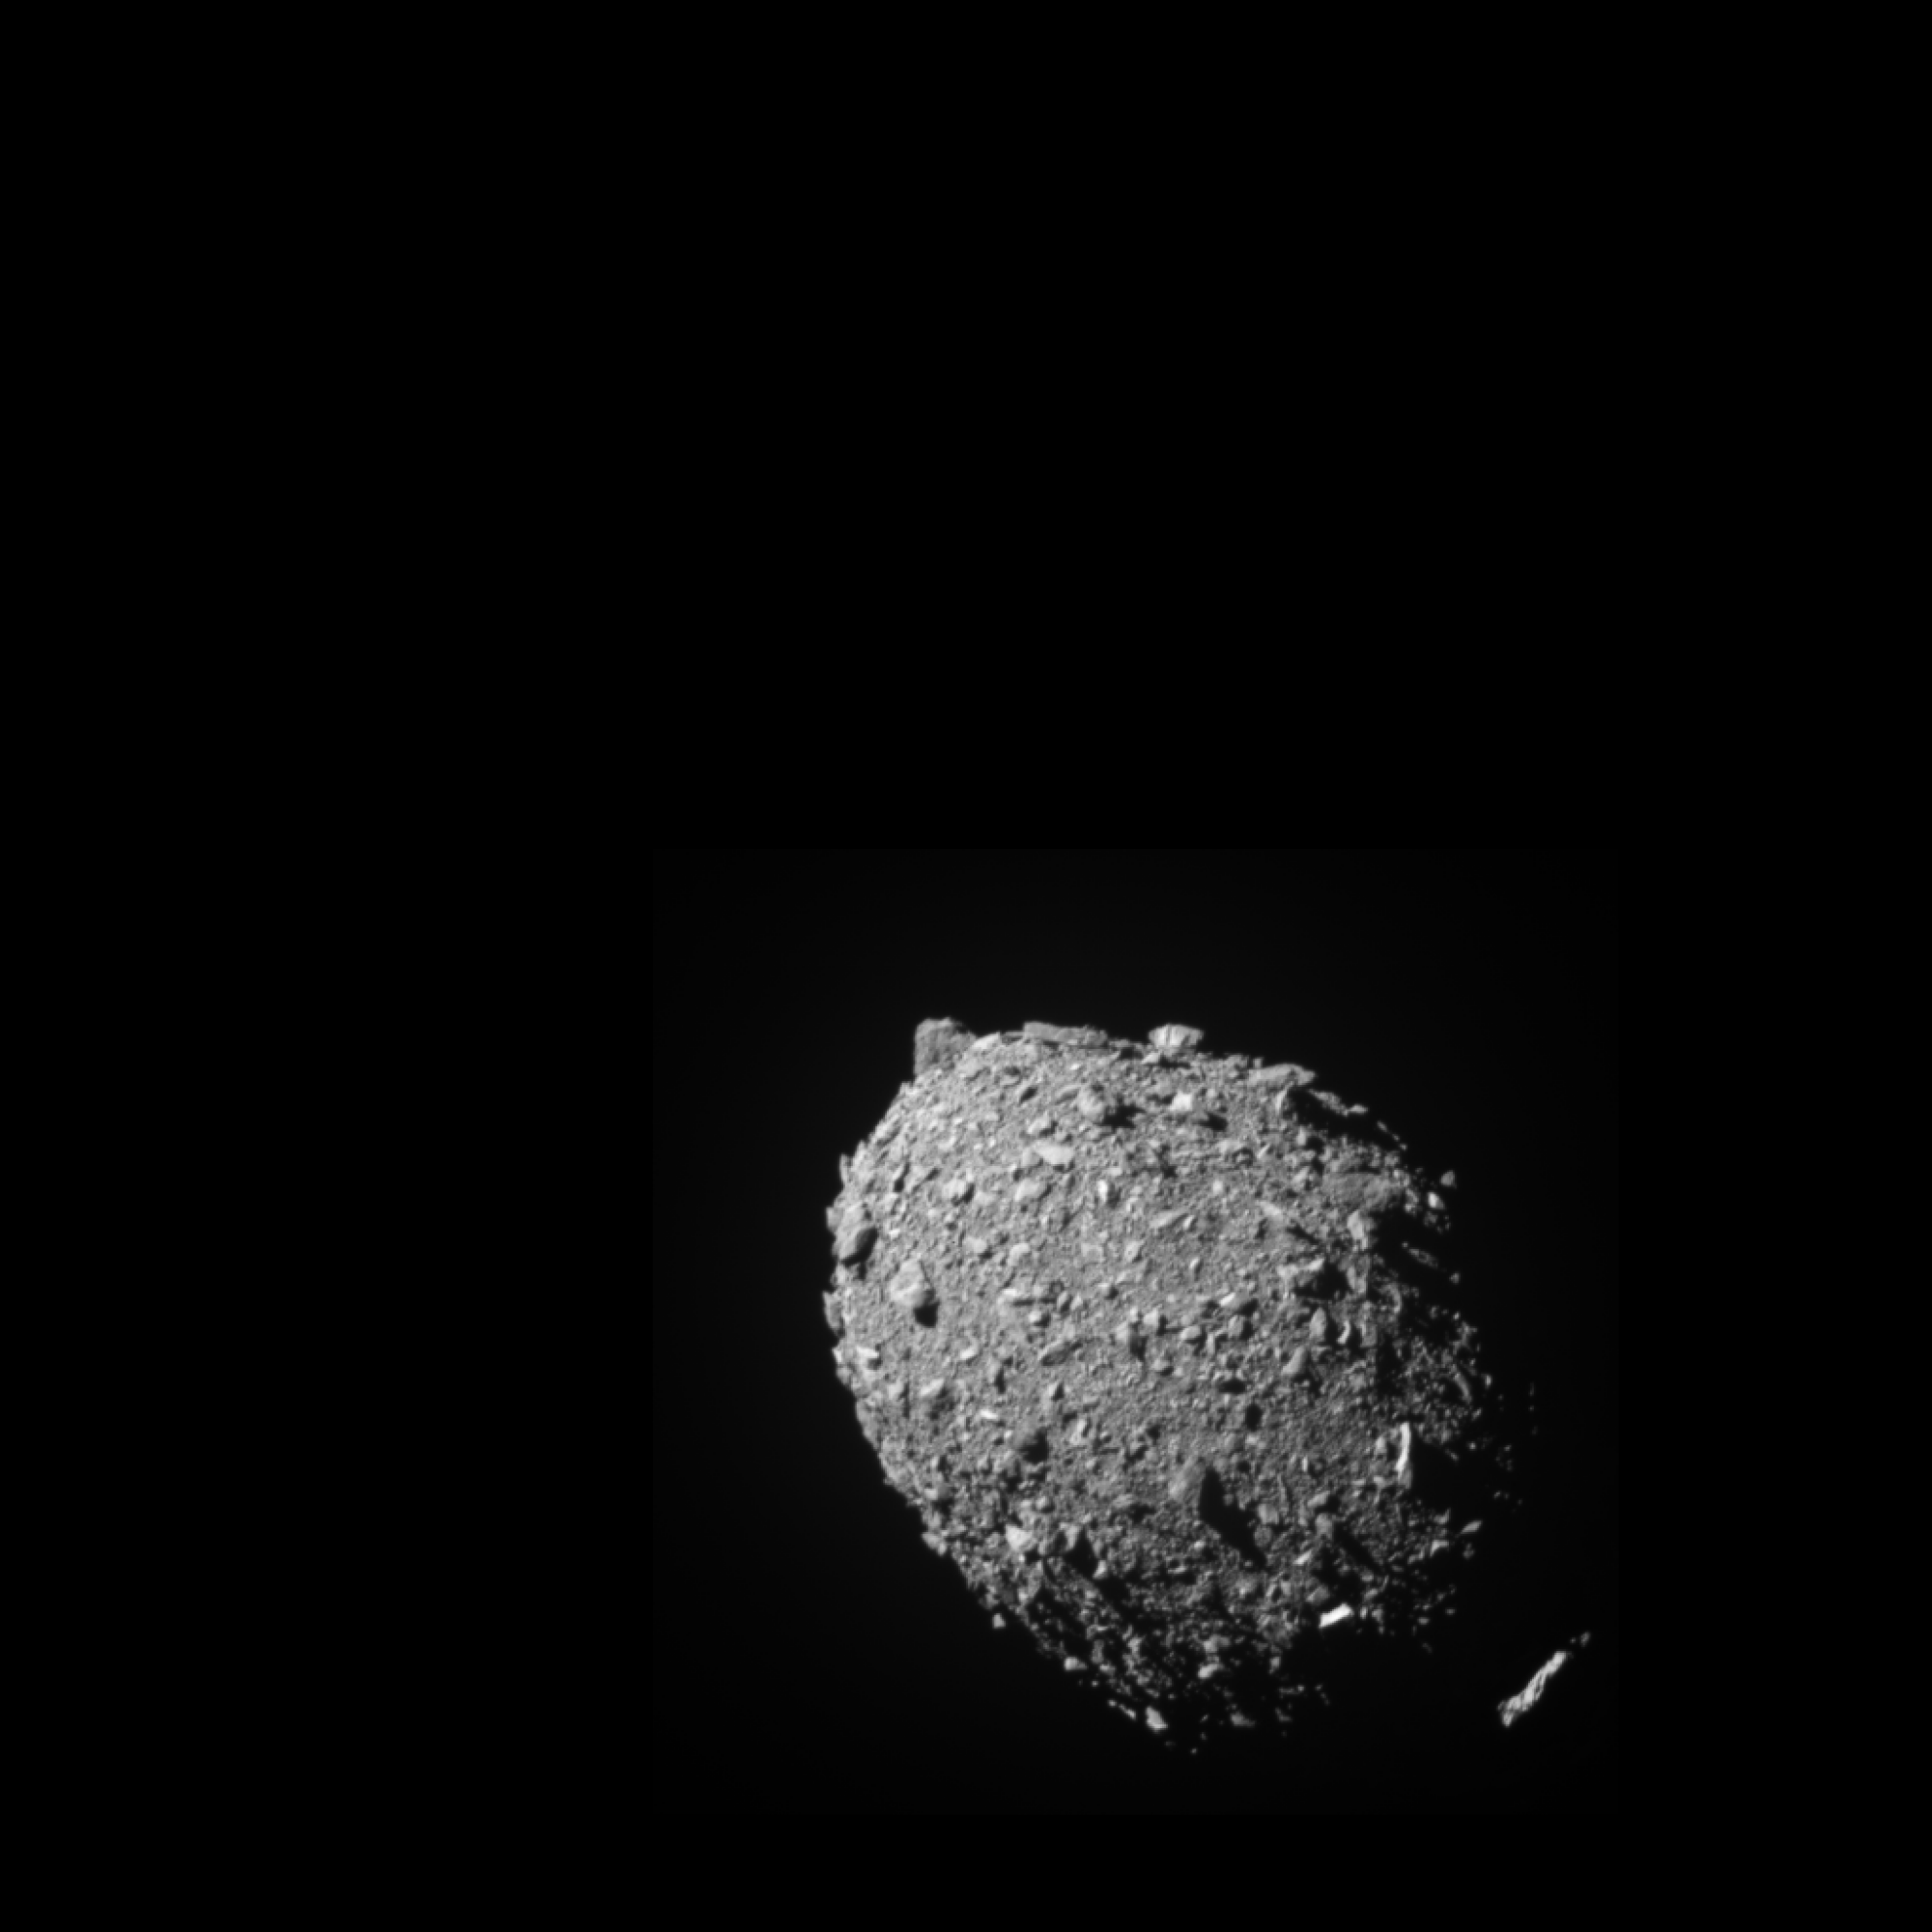 l'astéroïde rocheux Dimorphos